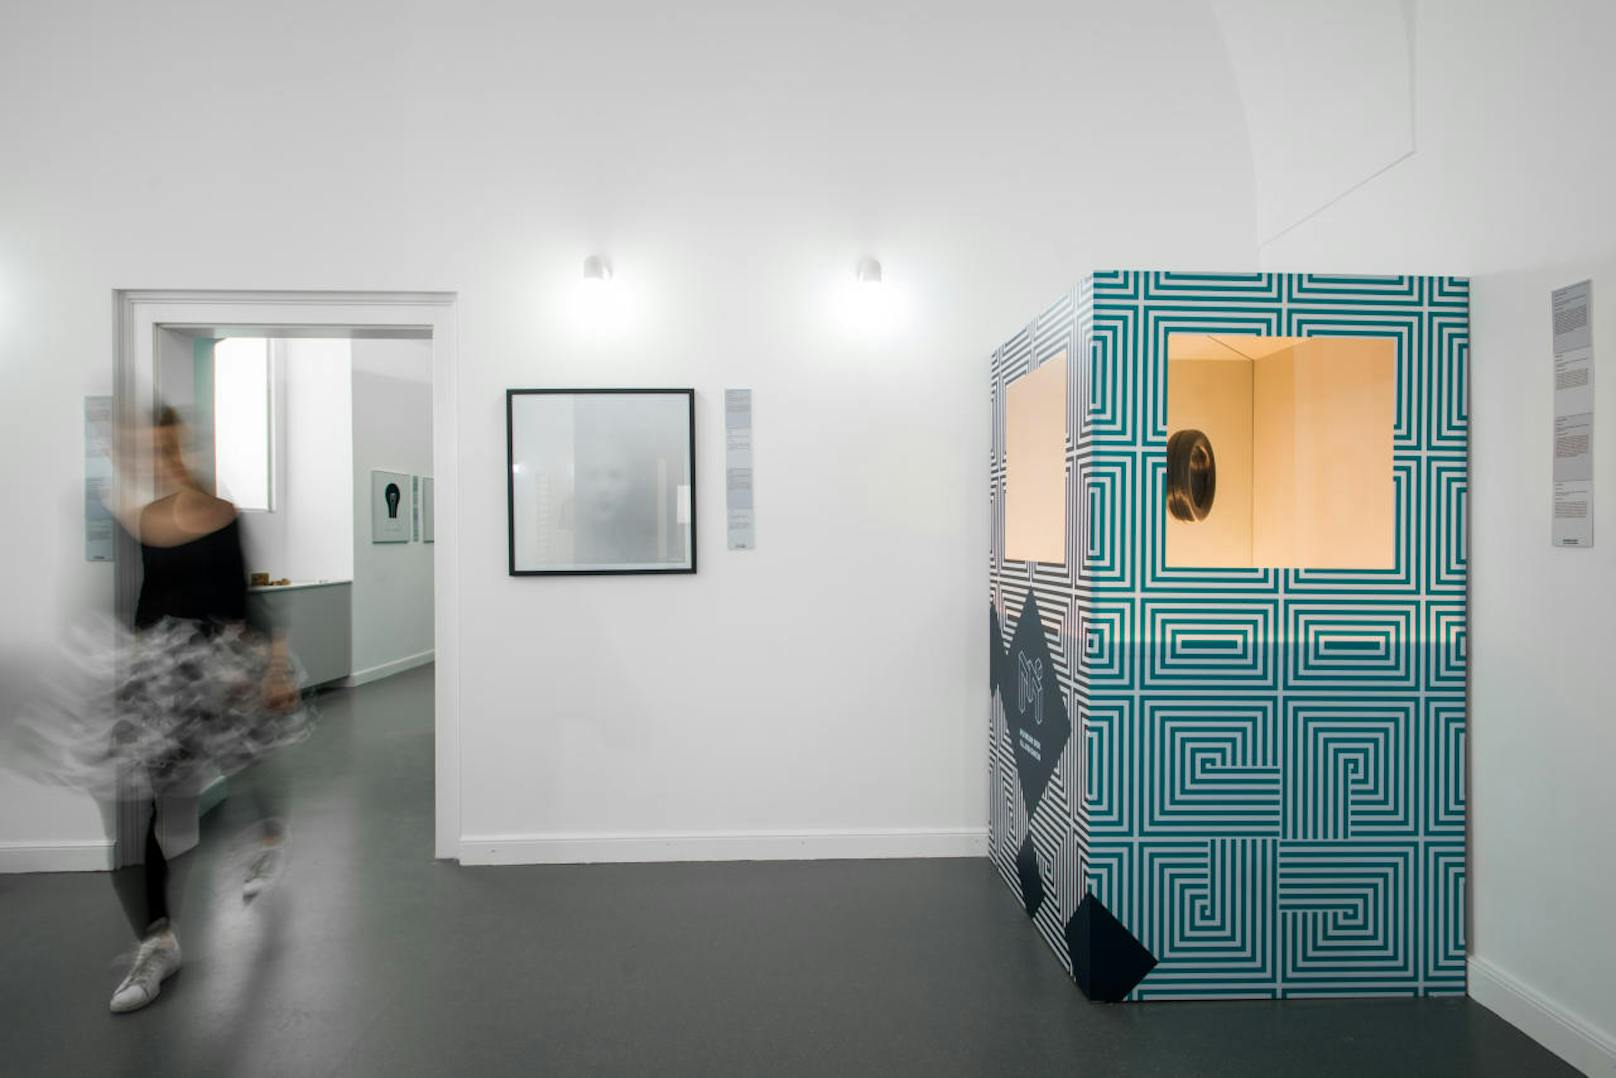 Mit über 70 Ausstellungsstücken zeigt das Museum der Illusionen die größte Sammlung von Hollogrammen, Stereogrammen und optischen Illusionen in Österreich.